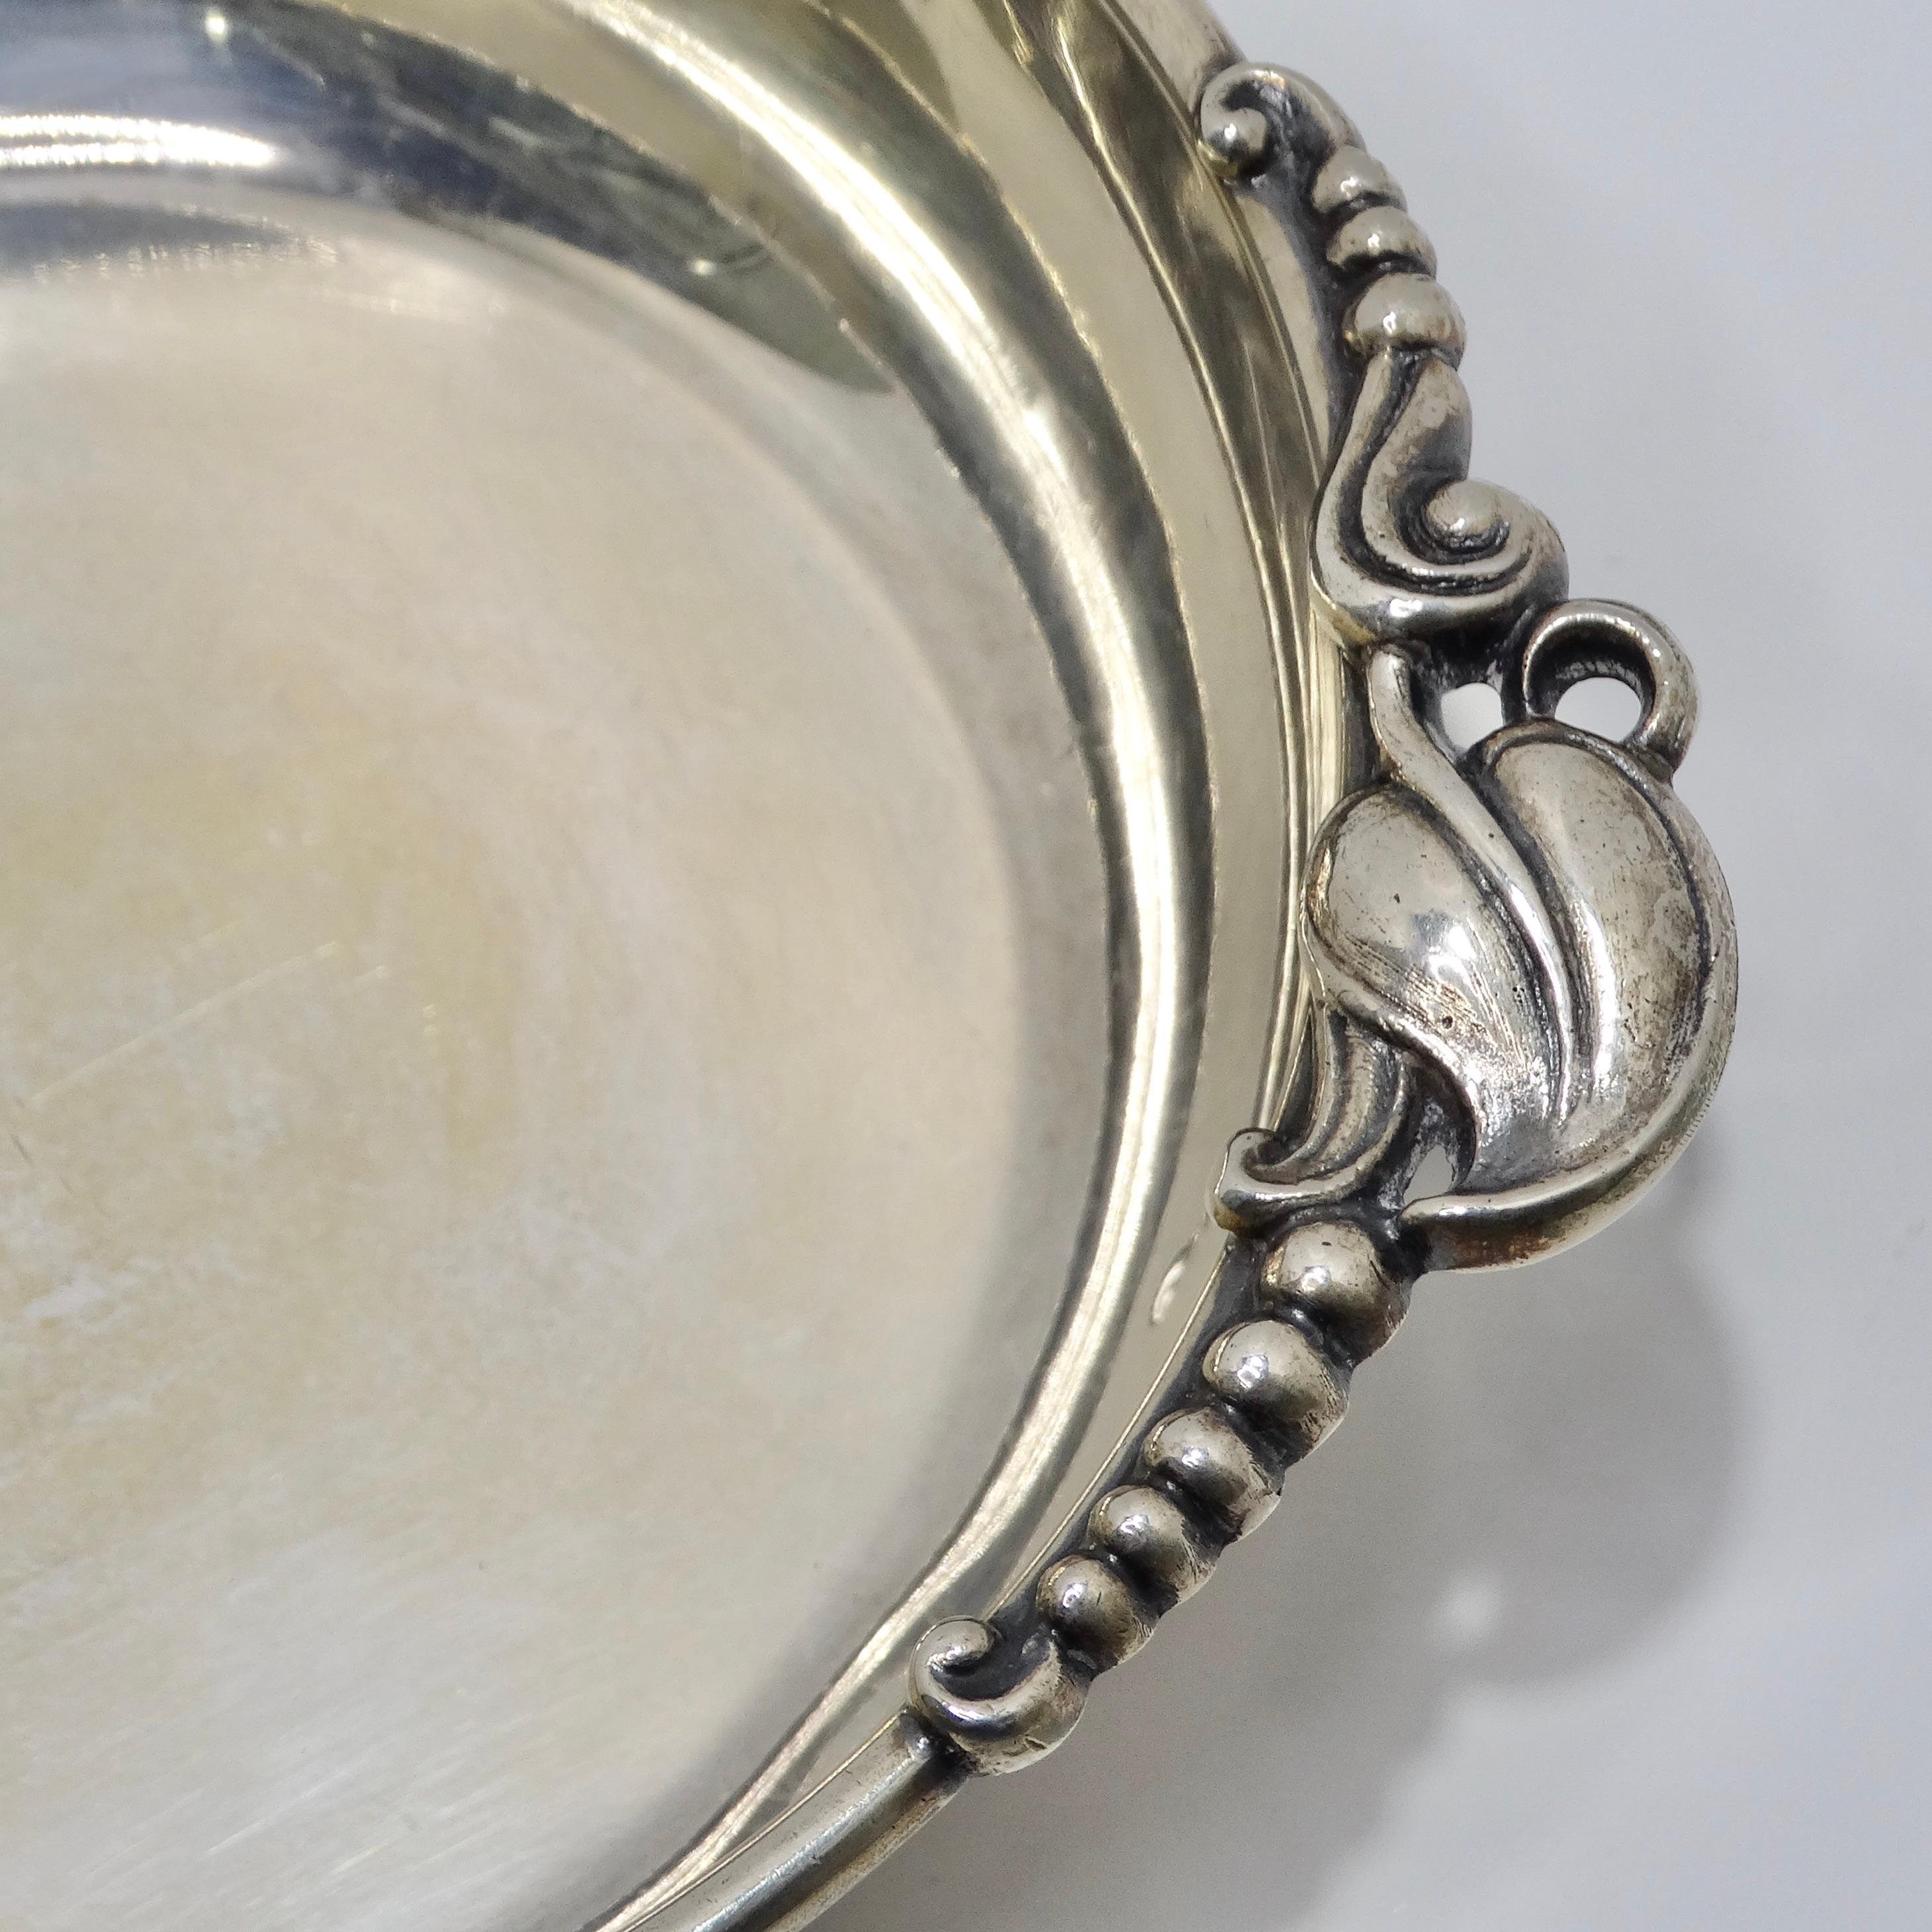 Wir präsentieren die antike Reinsilberschale, ein atemberaubendes Stück aus den frühen 1900er Jahren, das zeitlose Eleganz und Luxus verkörpert.

Diese mit viel Liebe zum Detail gefertigte Schale aus reinem Silber ist mit verschnörkelten